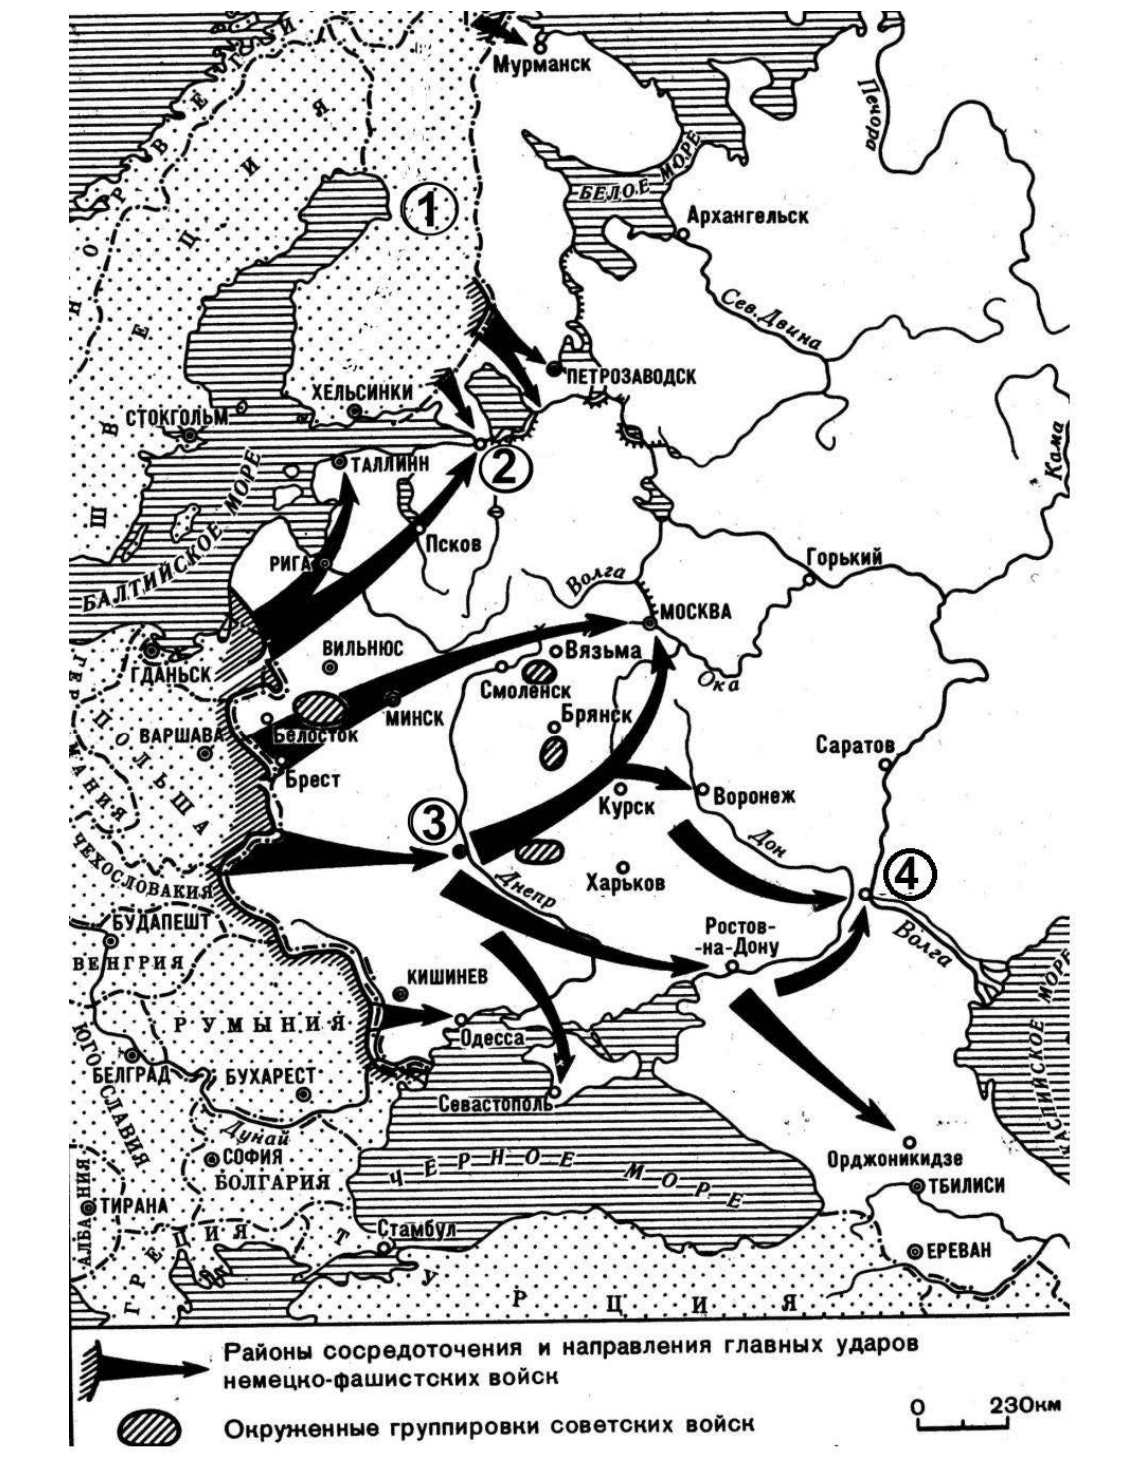 Карта нападения. Карта наступления фашистов на СССР 1941. Карта плана Барбаросса 1941. План нападения фашистской Германии 1941. План нападения СССР на Германию в 1941.